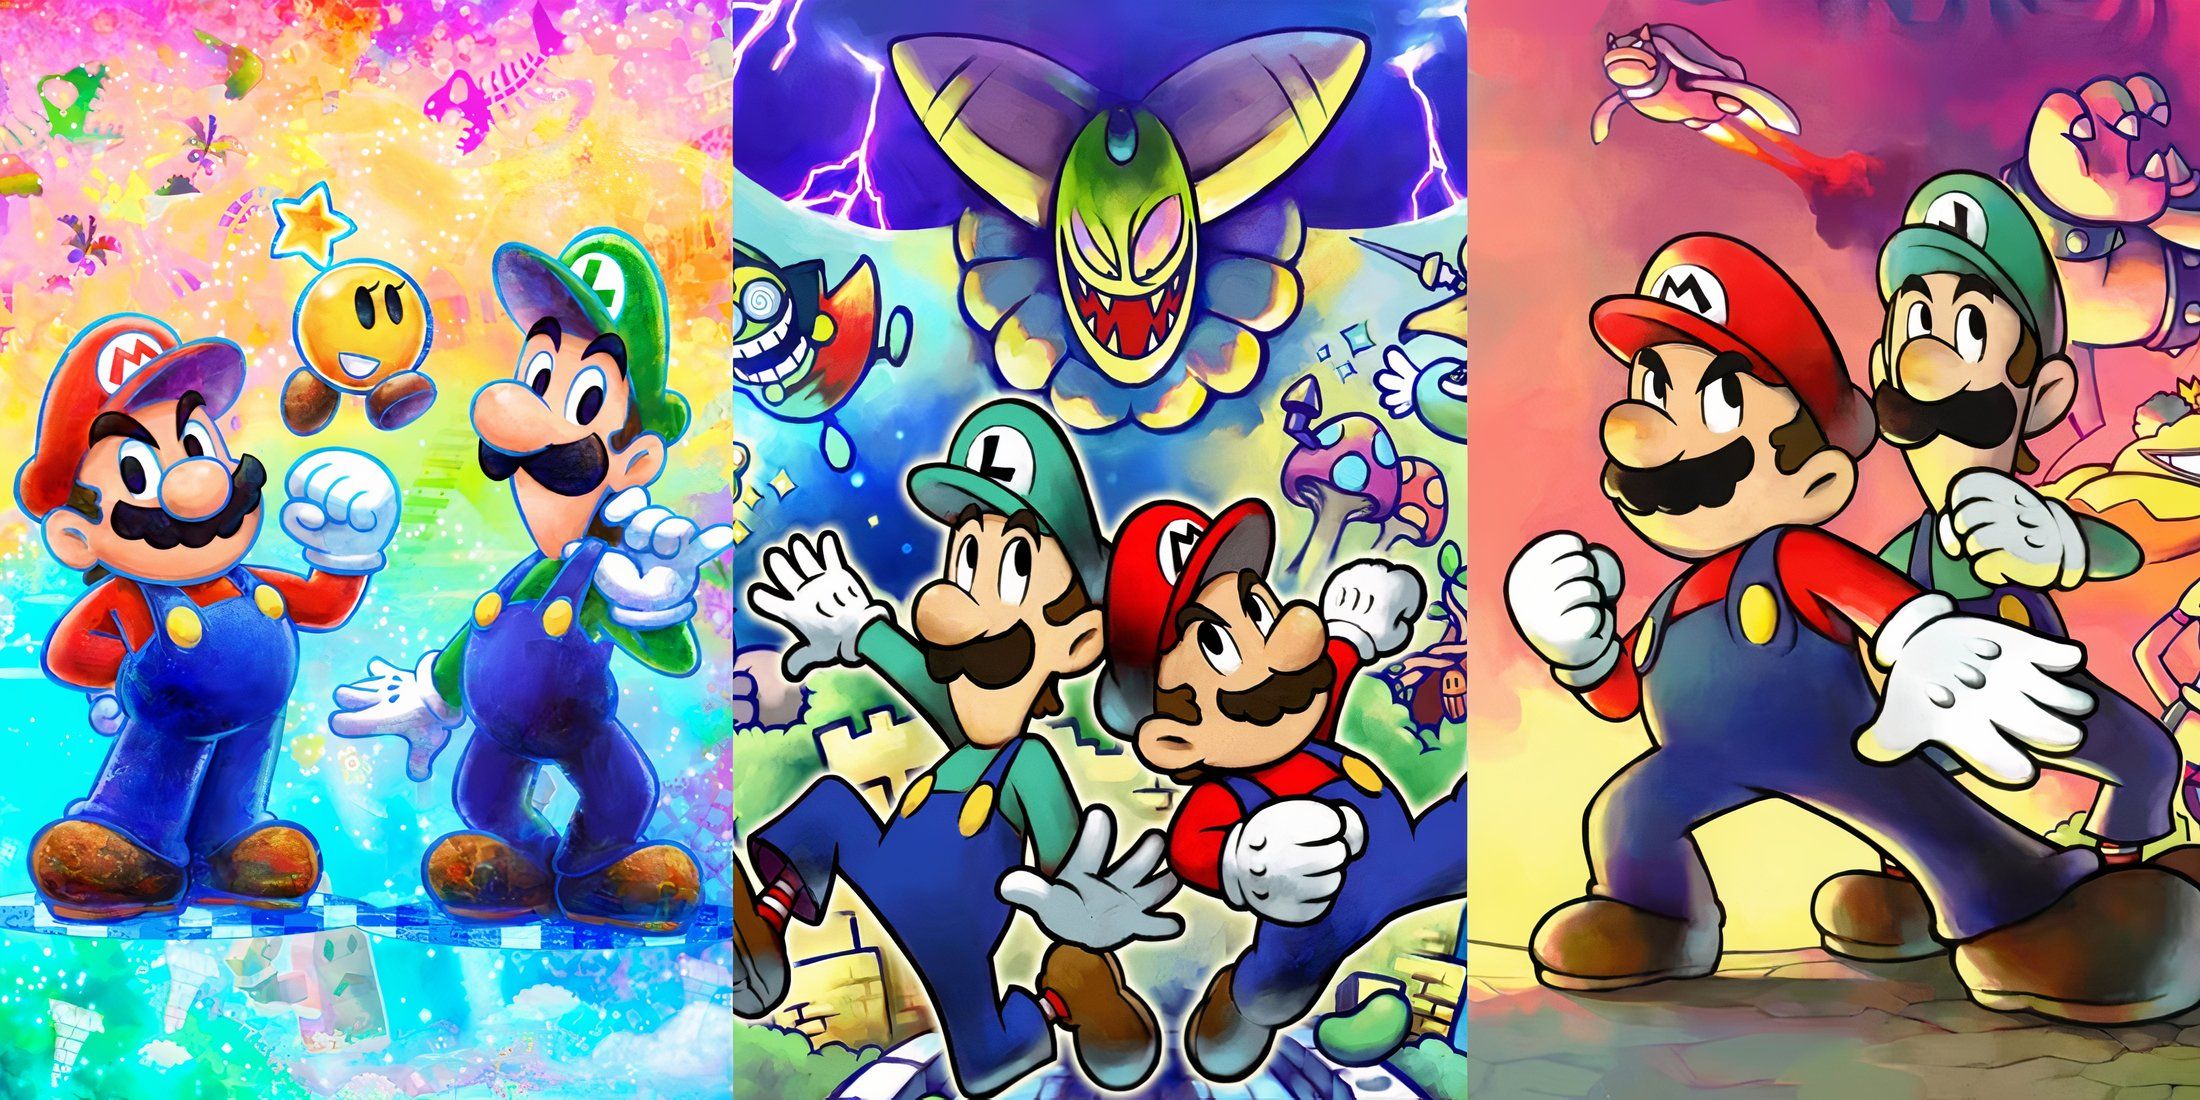 Promo art for Mario & Luigi games for best Mario & Luigi games ranked feature image